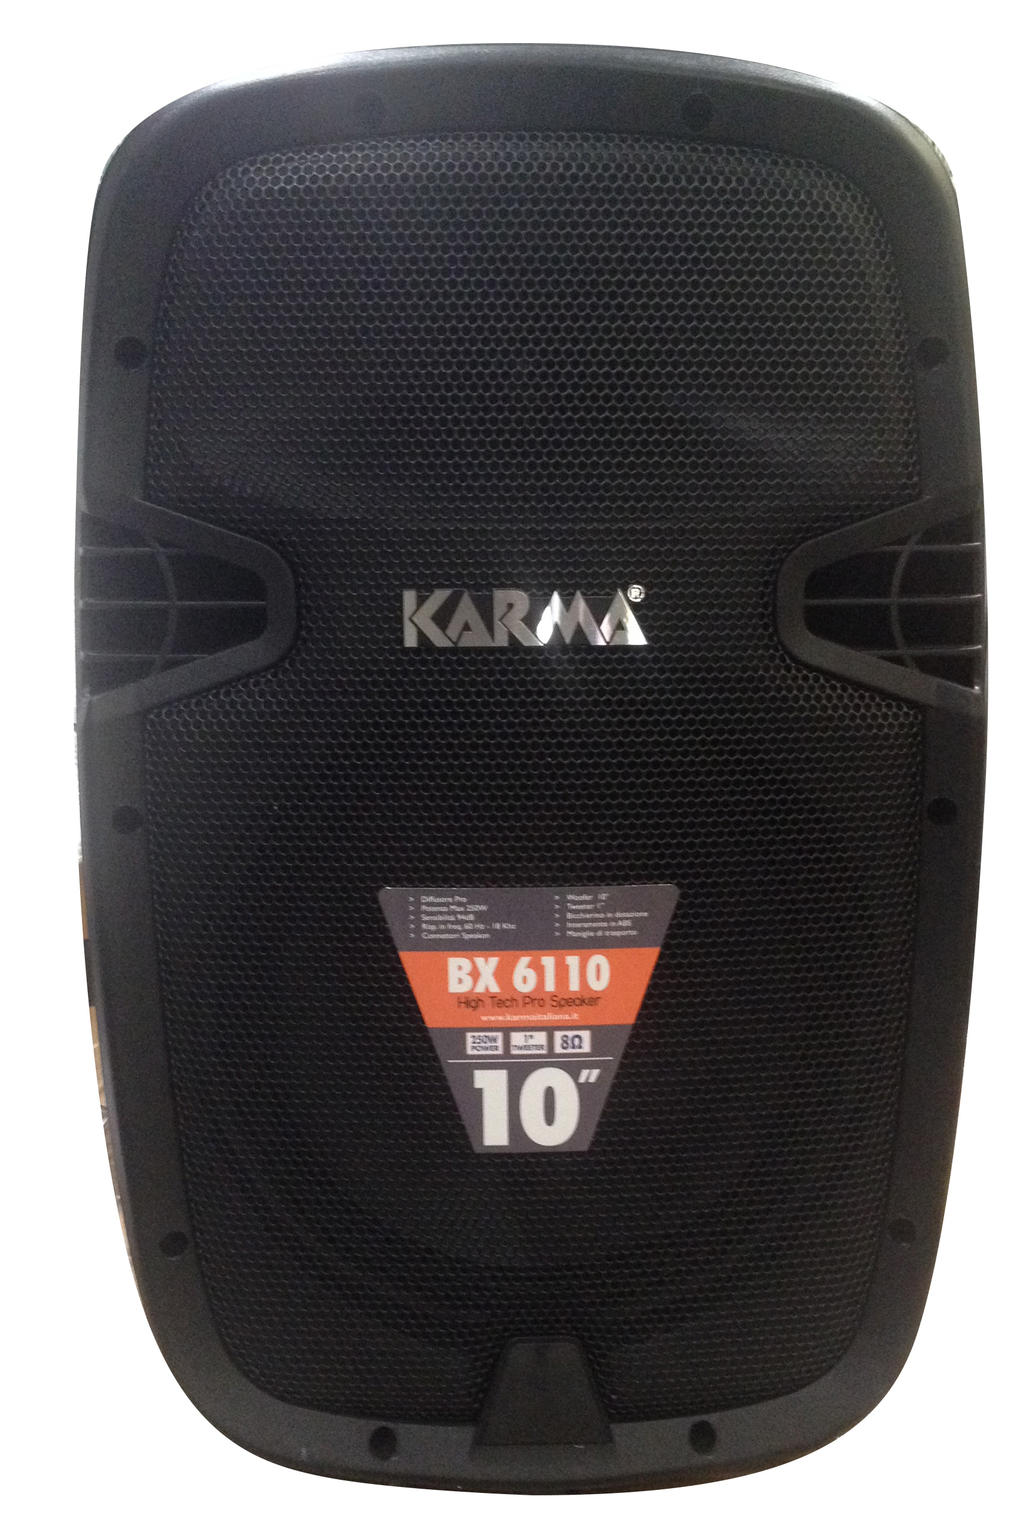 Karma BX 6110 XXL Image